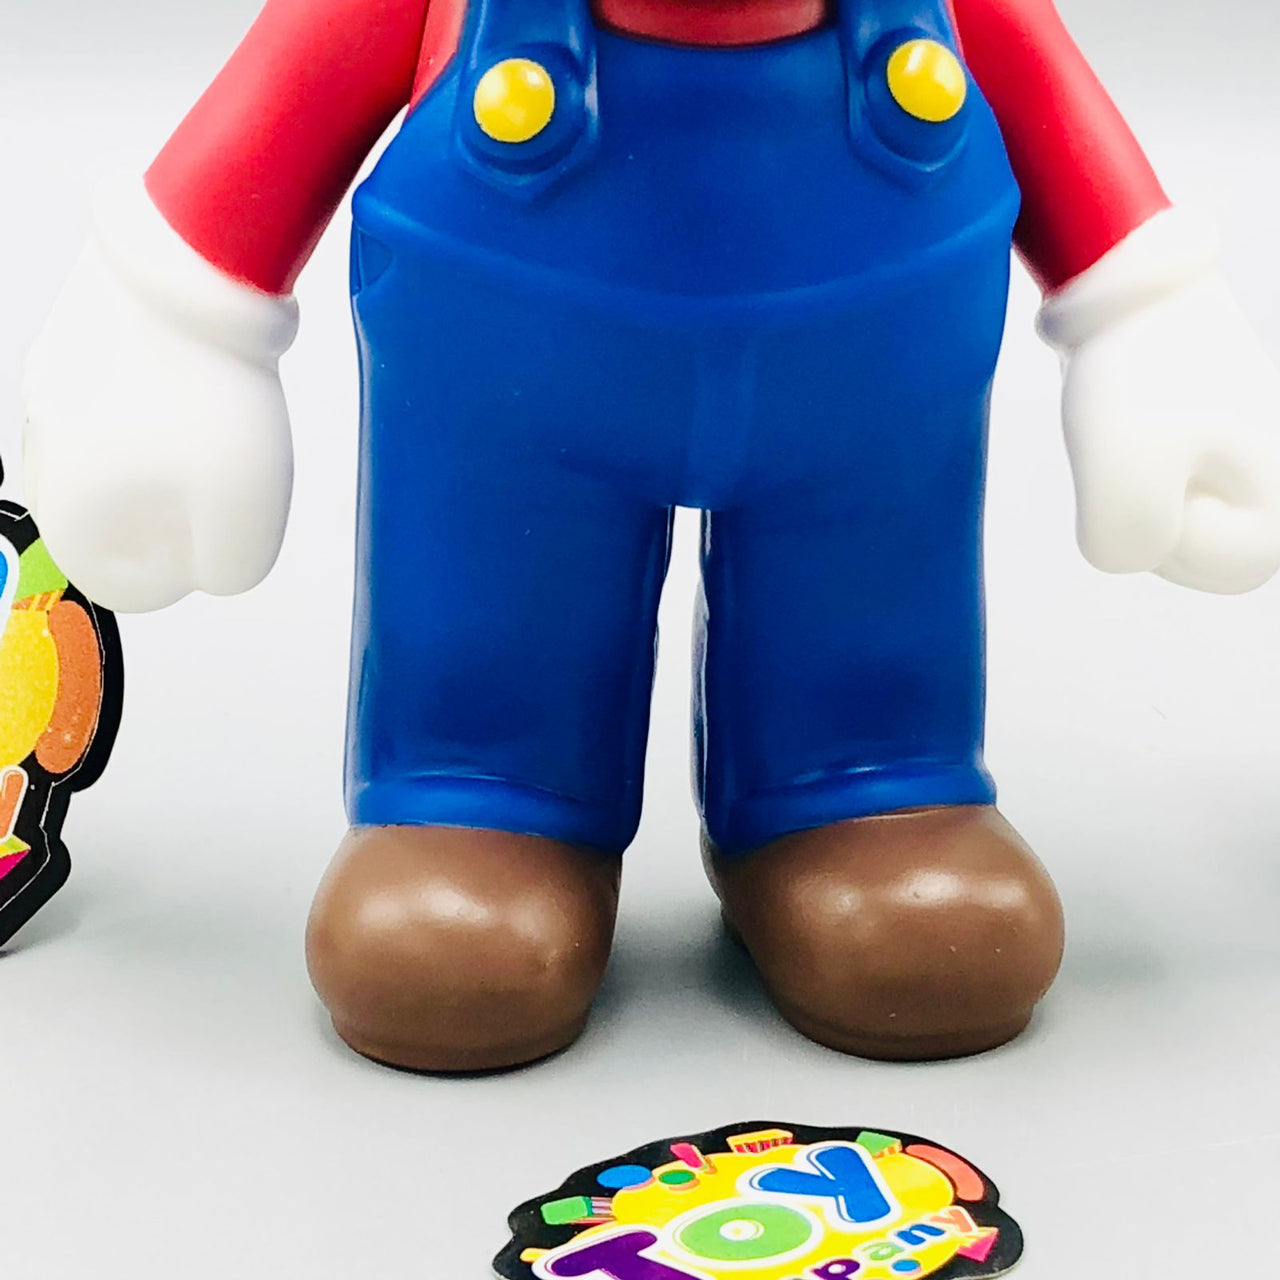 Premium Quality Super Mario Toy